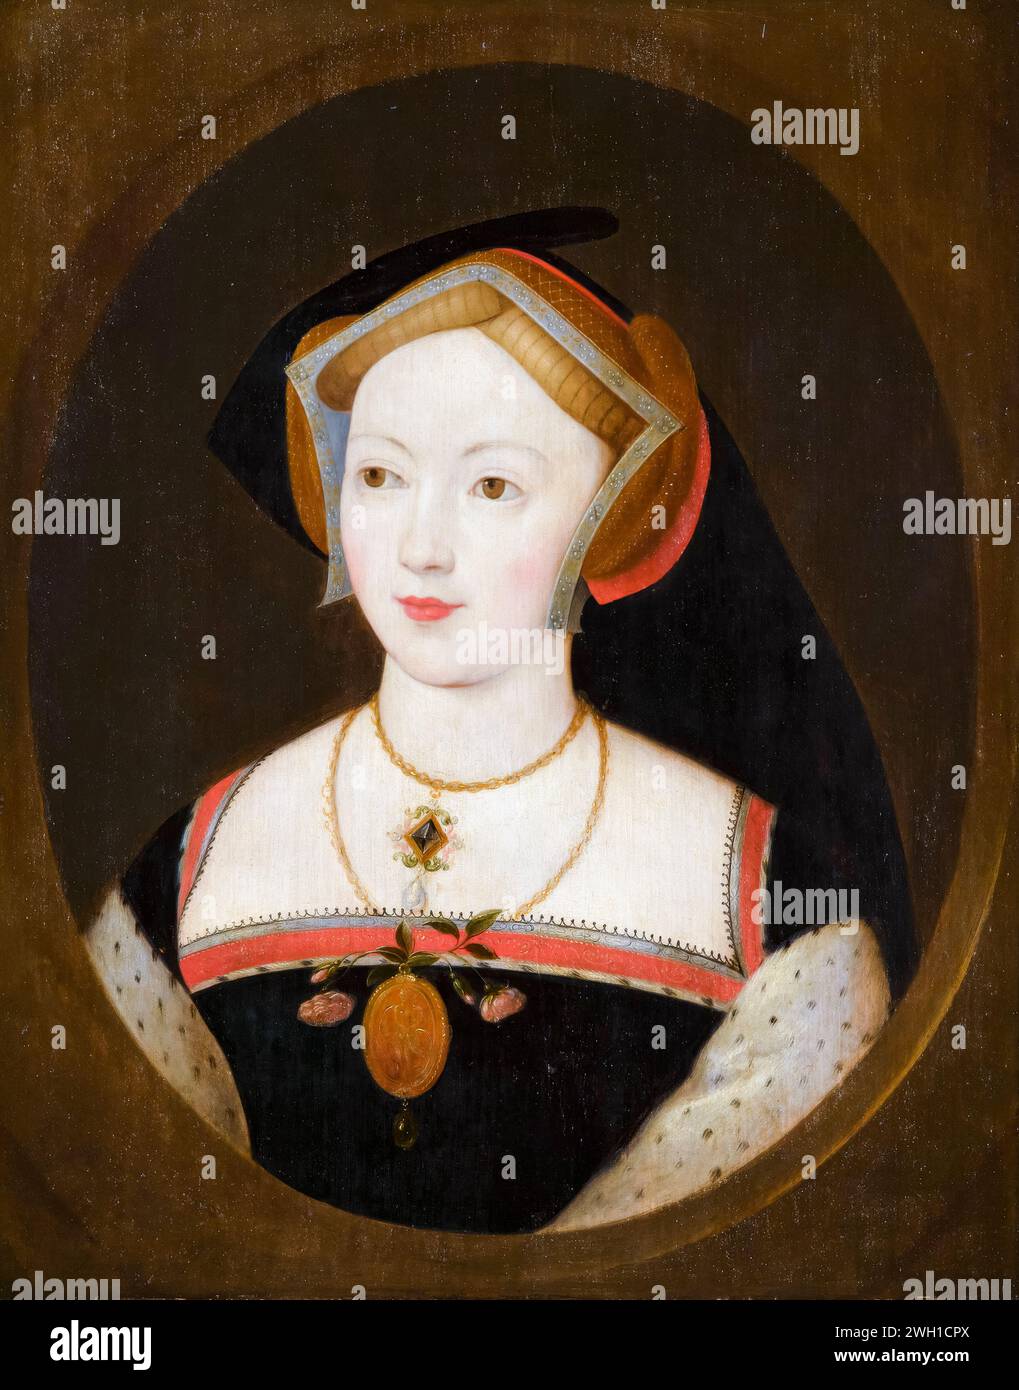 Mary Boleyn (vers 1499-1543), sœur d'Anne, maîtresse du roi Henri VIII, portrait peint à l'huile sur panneau d'après Remigius van Leemput, 1630-1670 Banque D'Images